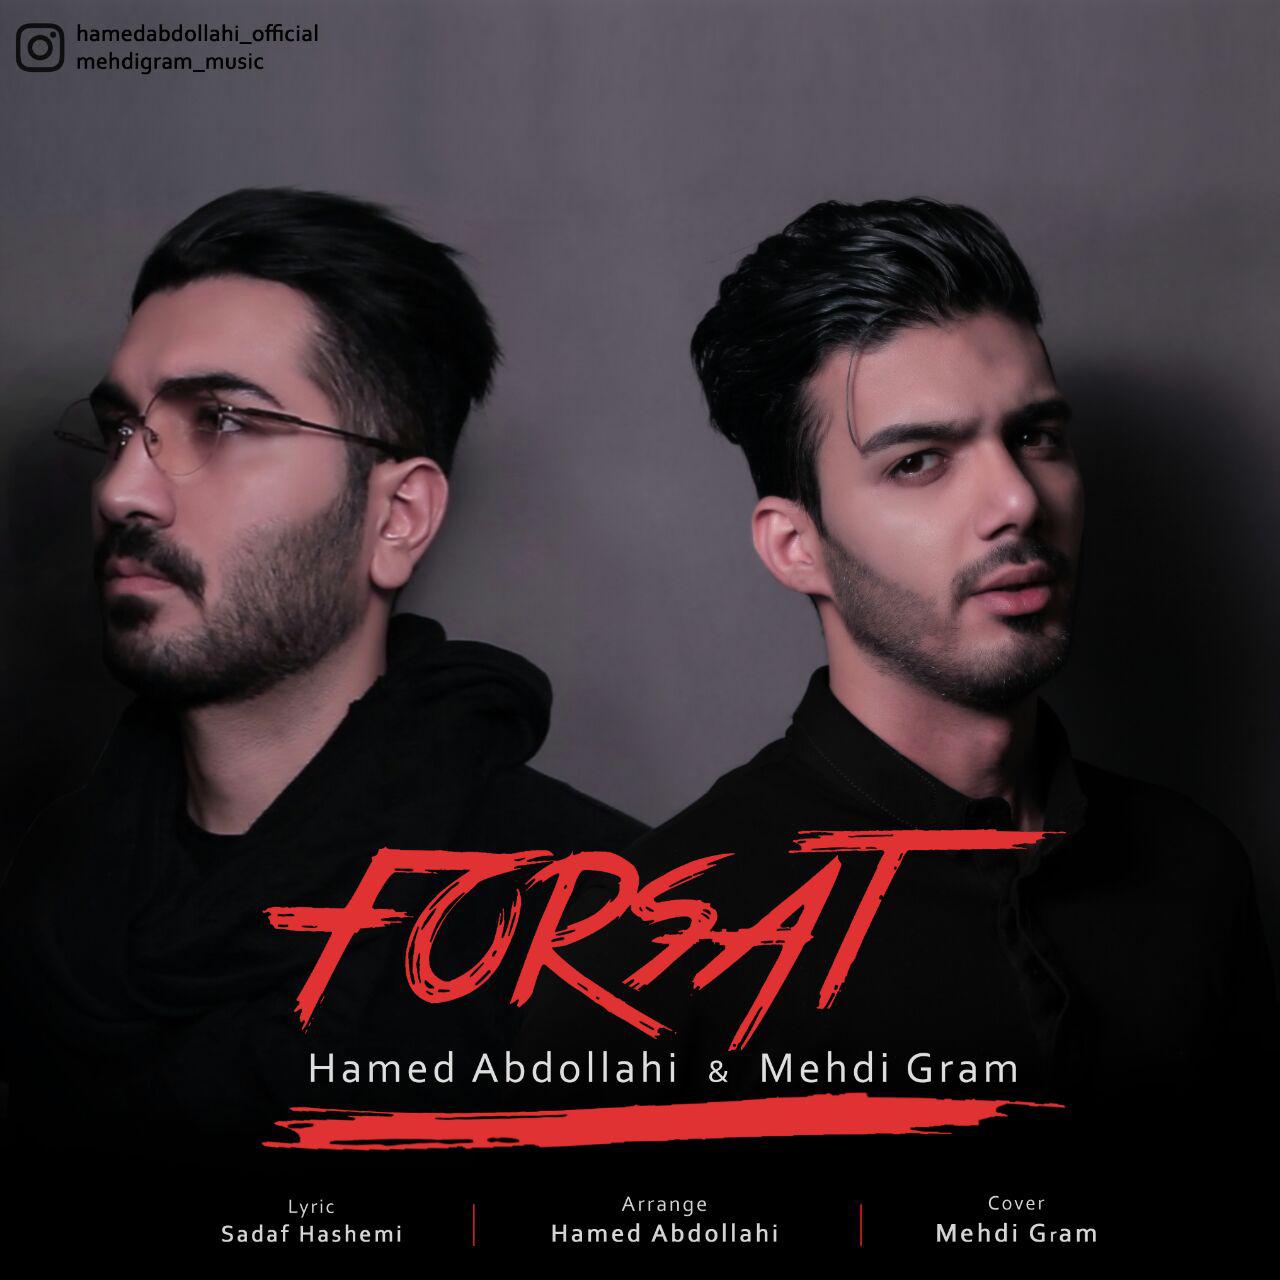  دانلود آهنگ جدید حامد عبداللهی و مهدی گرام - فرصت | Download New Music By Hamed Abdollahi & Mehdi Gram  - Forsat 